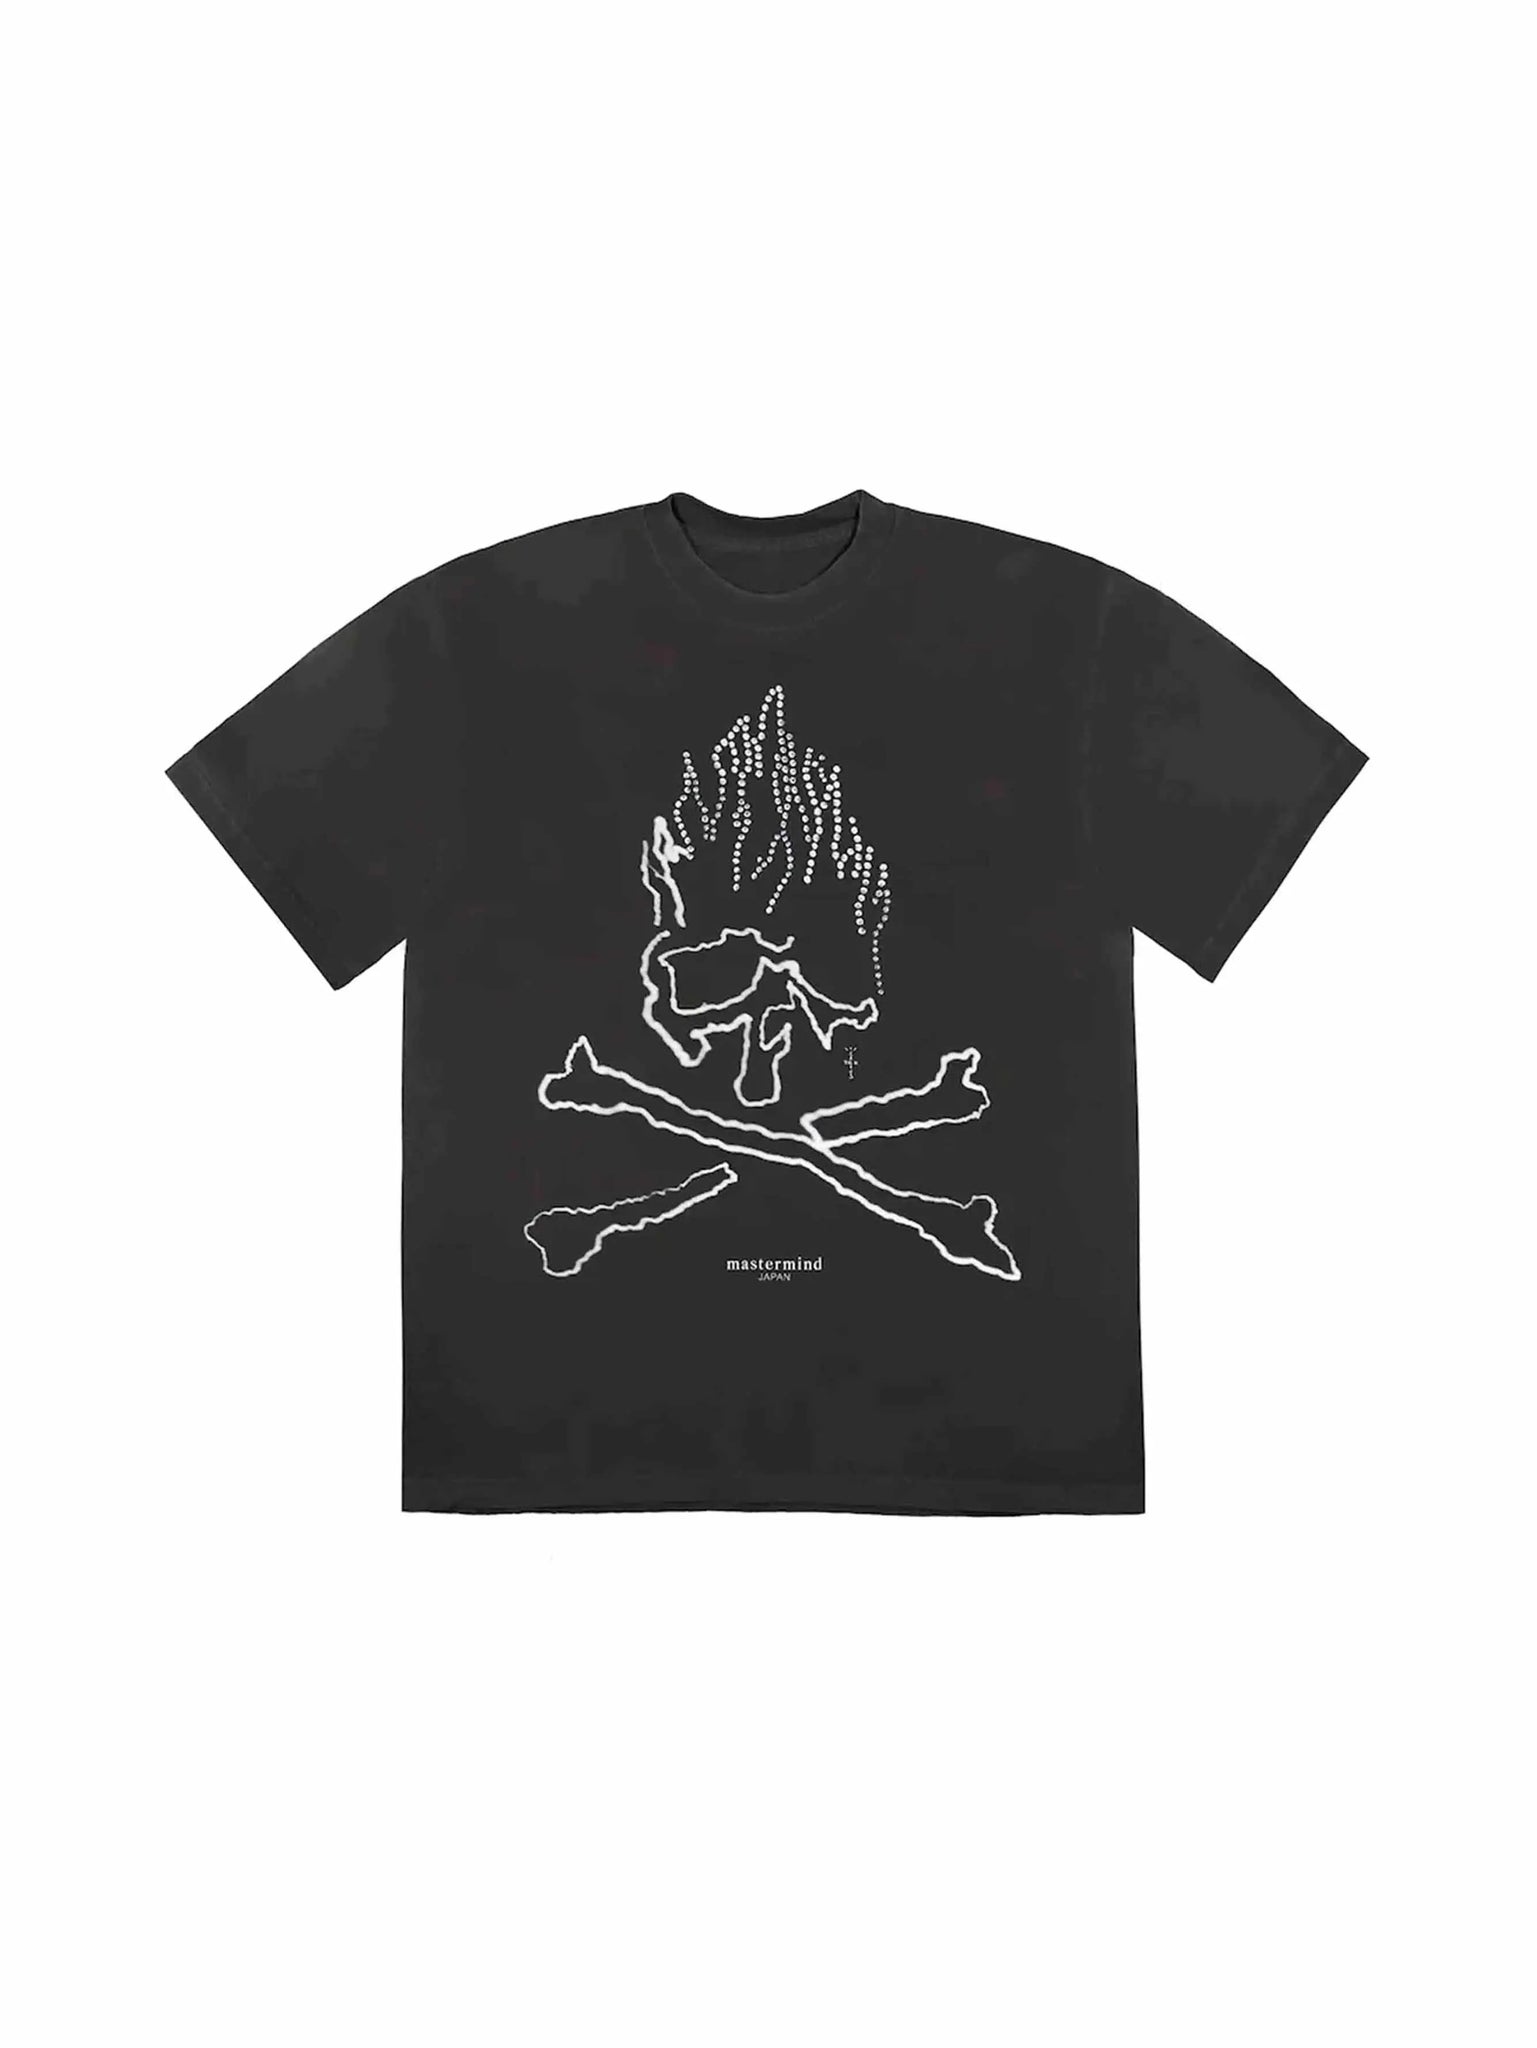 Travis Scott Cactus Jack For Mastermind Skull T-shirt Black Prior